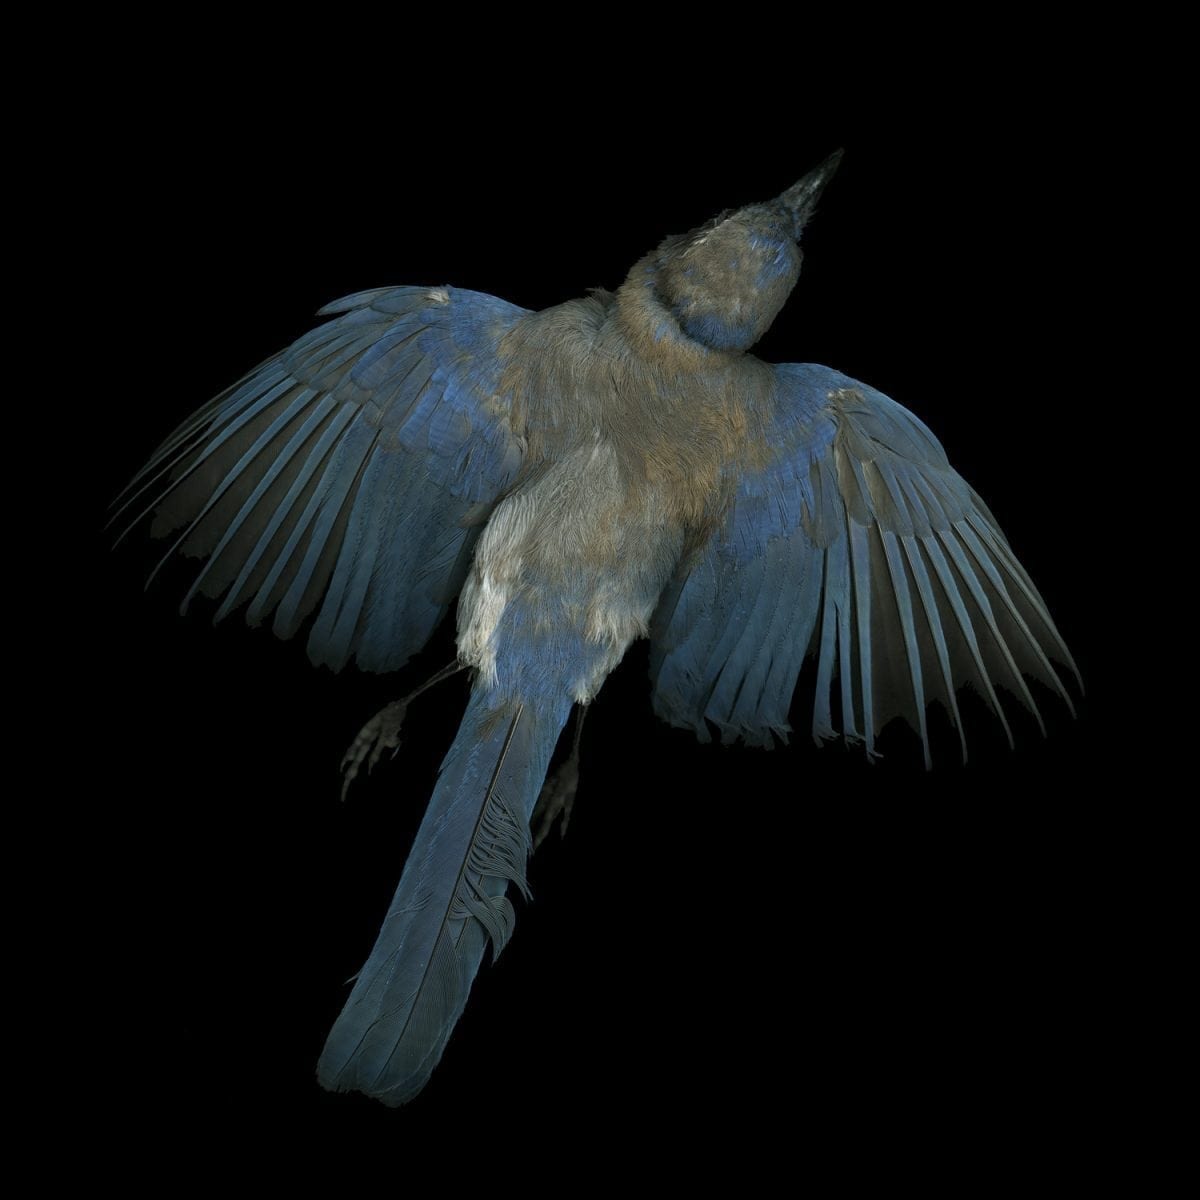 Jay Ruland blue jay dead bird photography